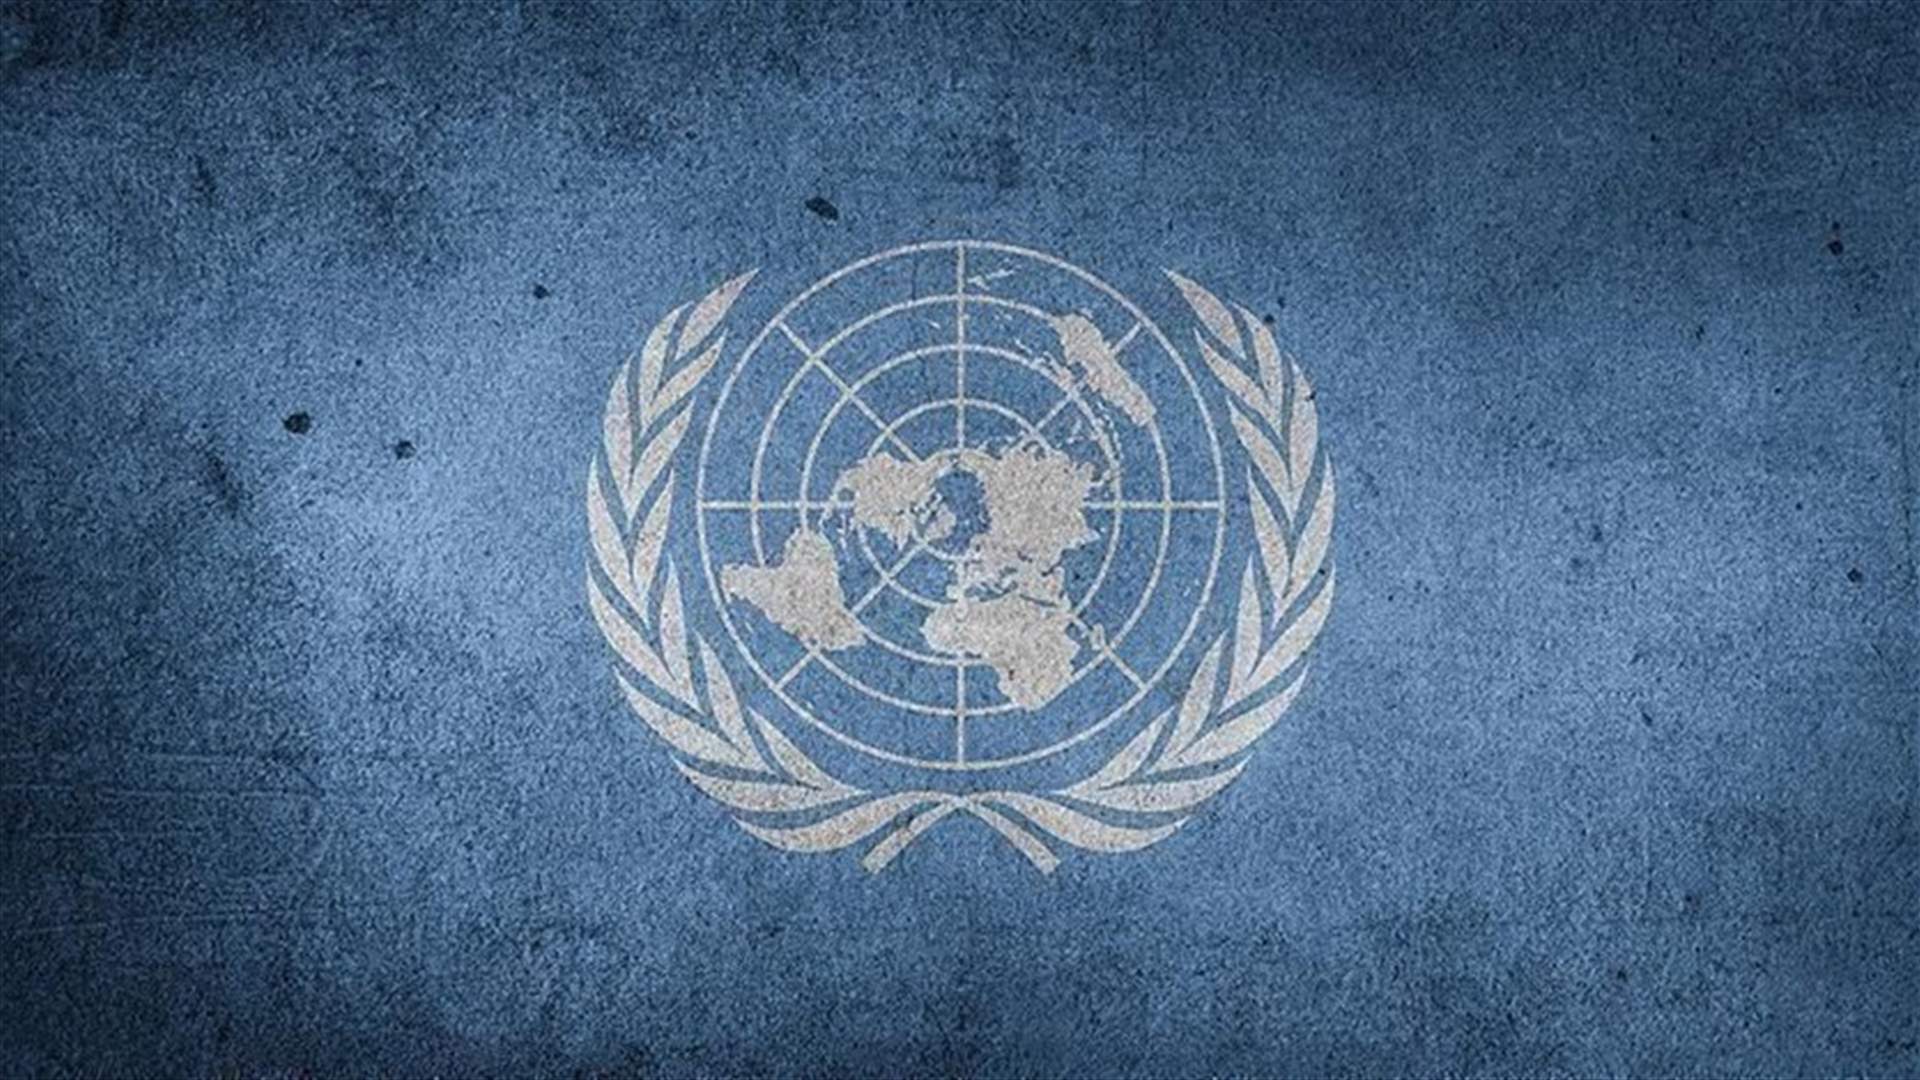 الأمم المتحدة تطلب فتح تحقيق غير منحاز حول المجازر في إثيوبيا